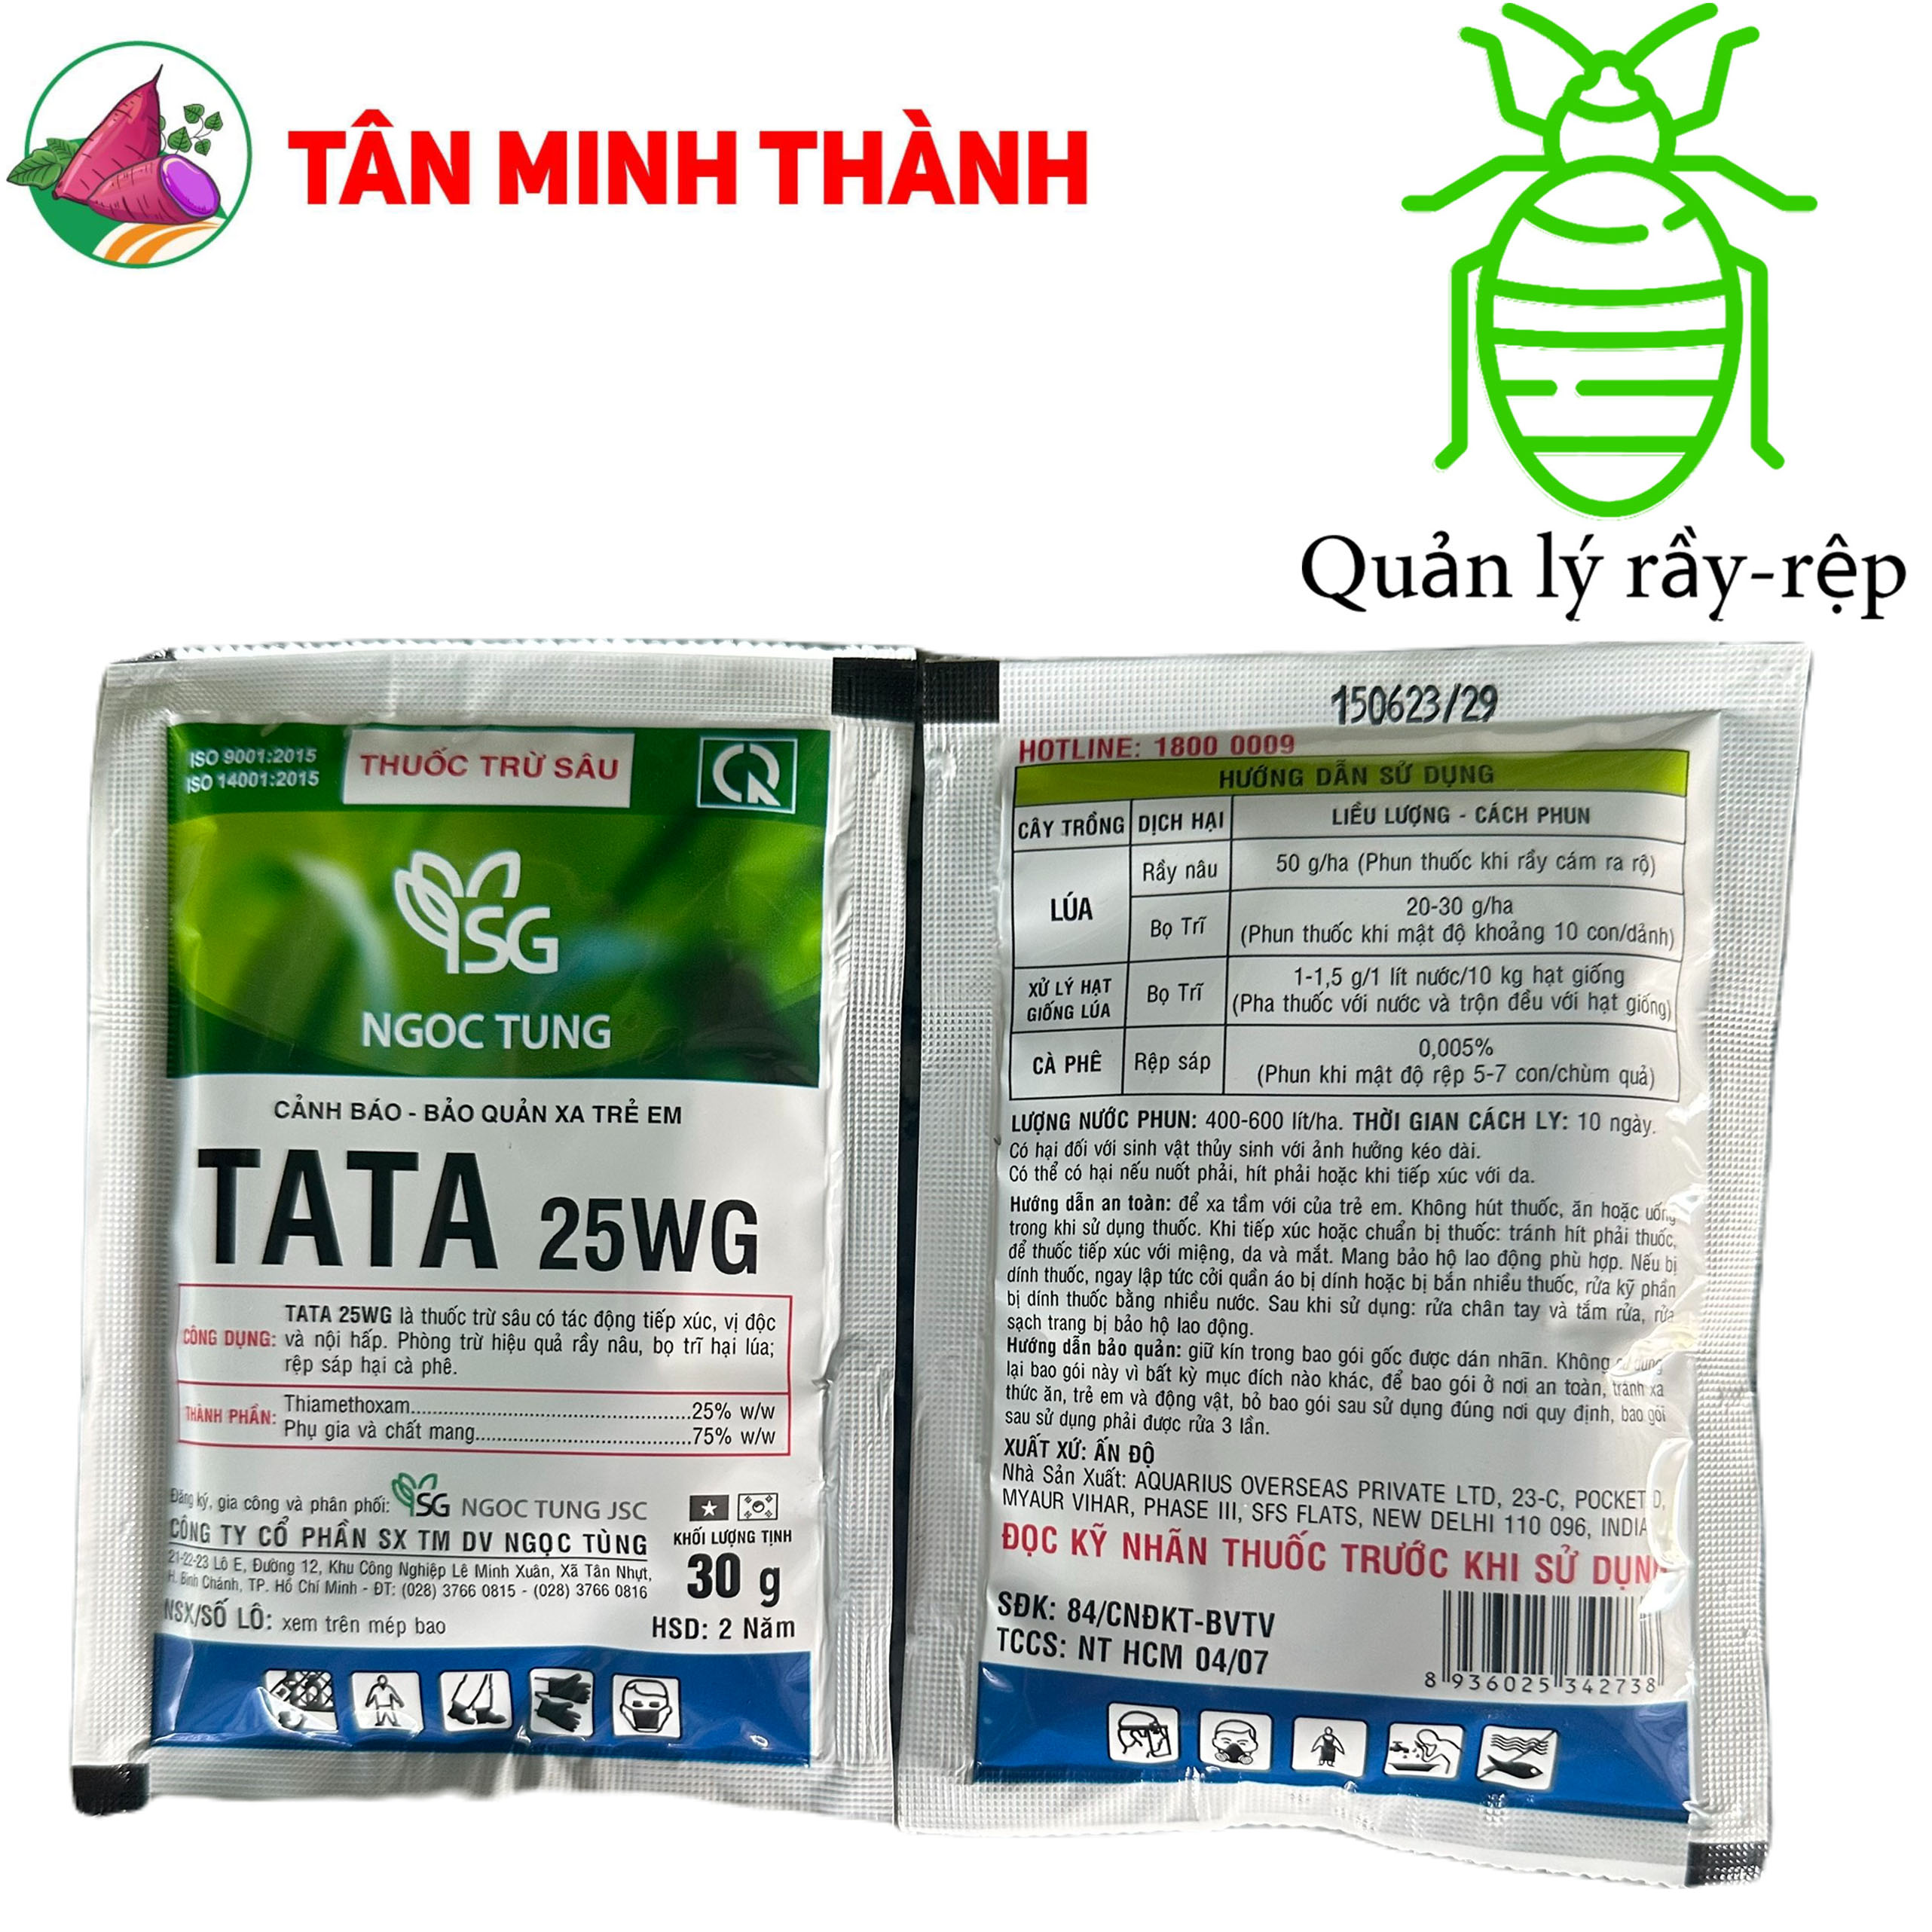 Tata 25WG - Thuốc đặc trị rầy nâu, bọ trĩ, rệp sáp